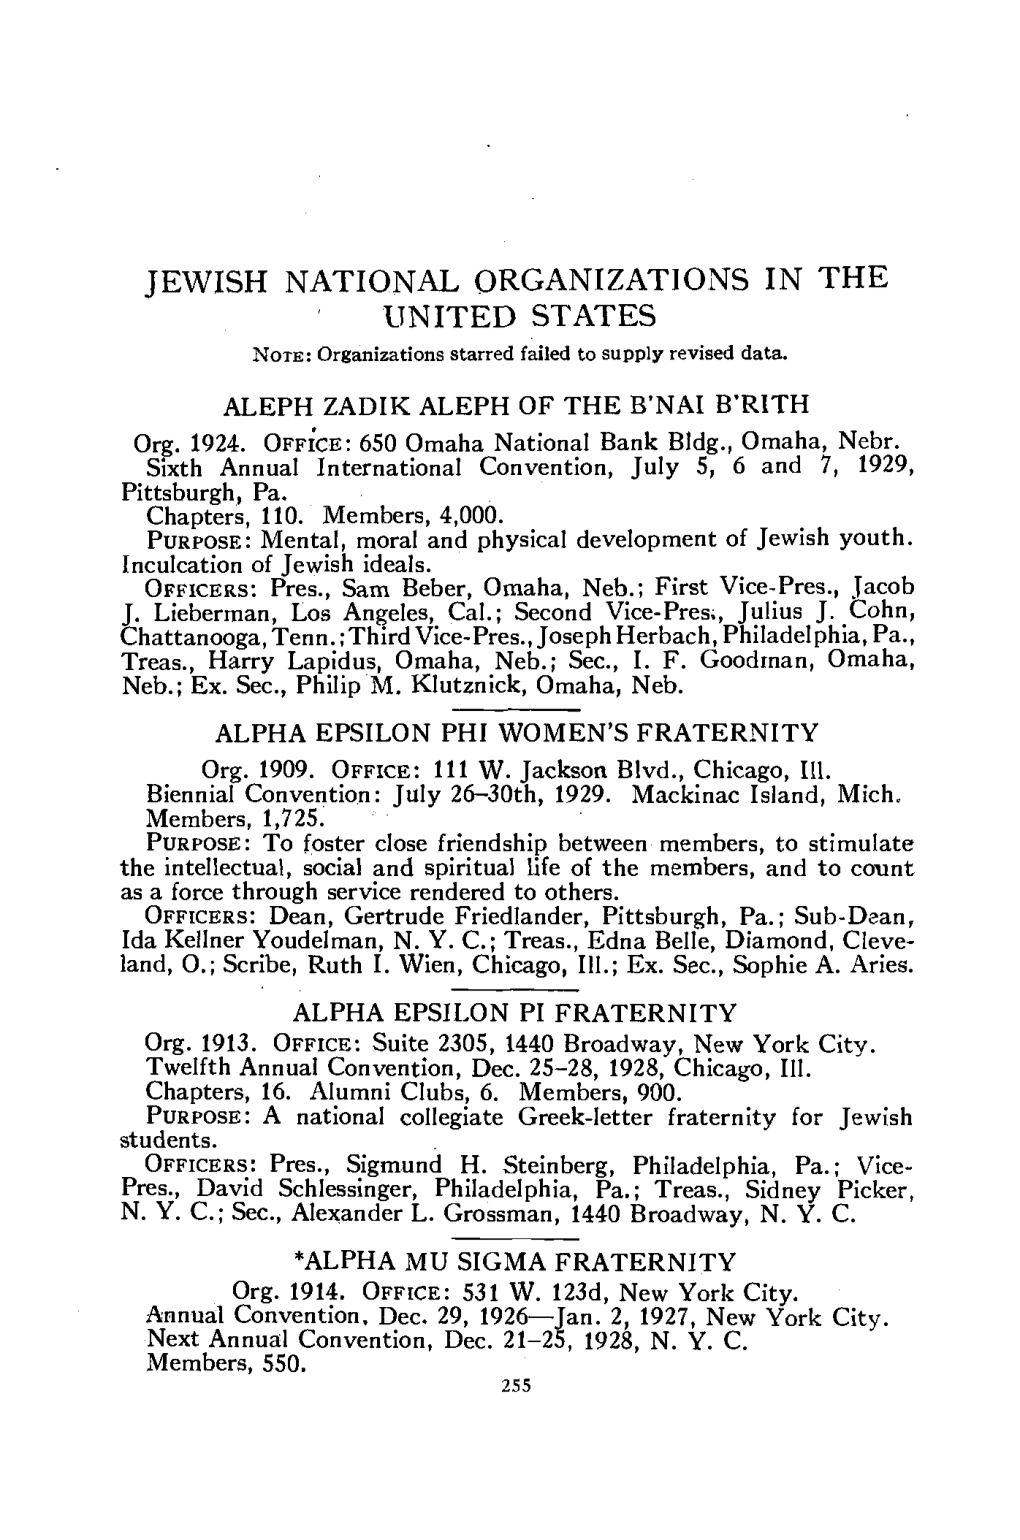 Statistics of Jews (1929-1930)